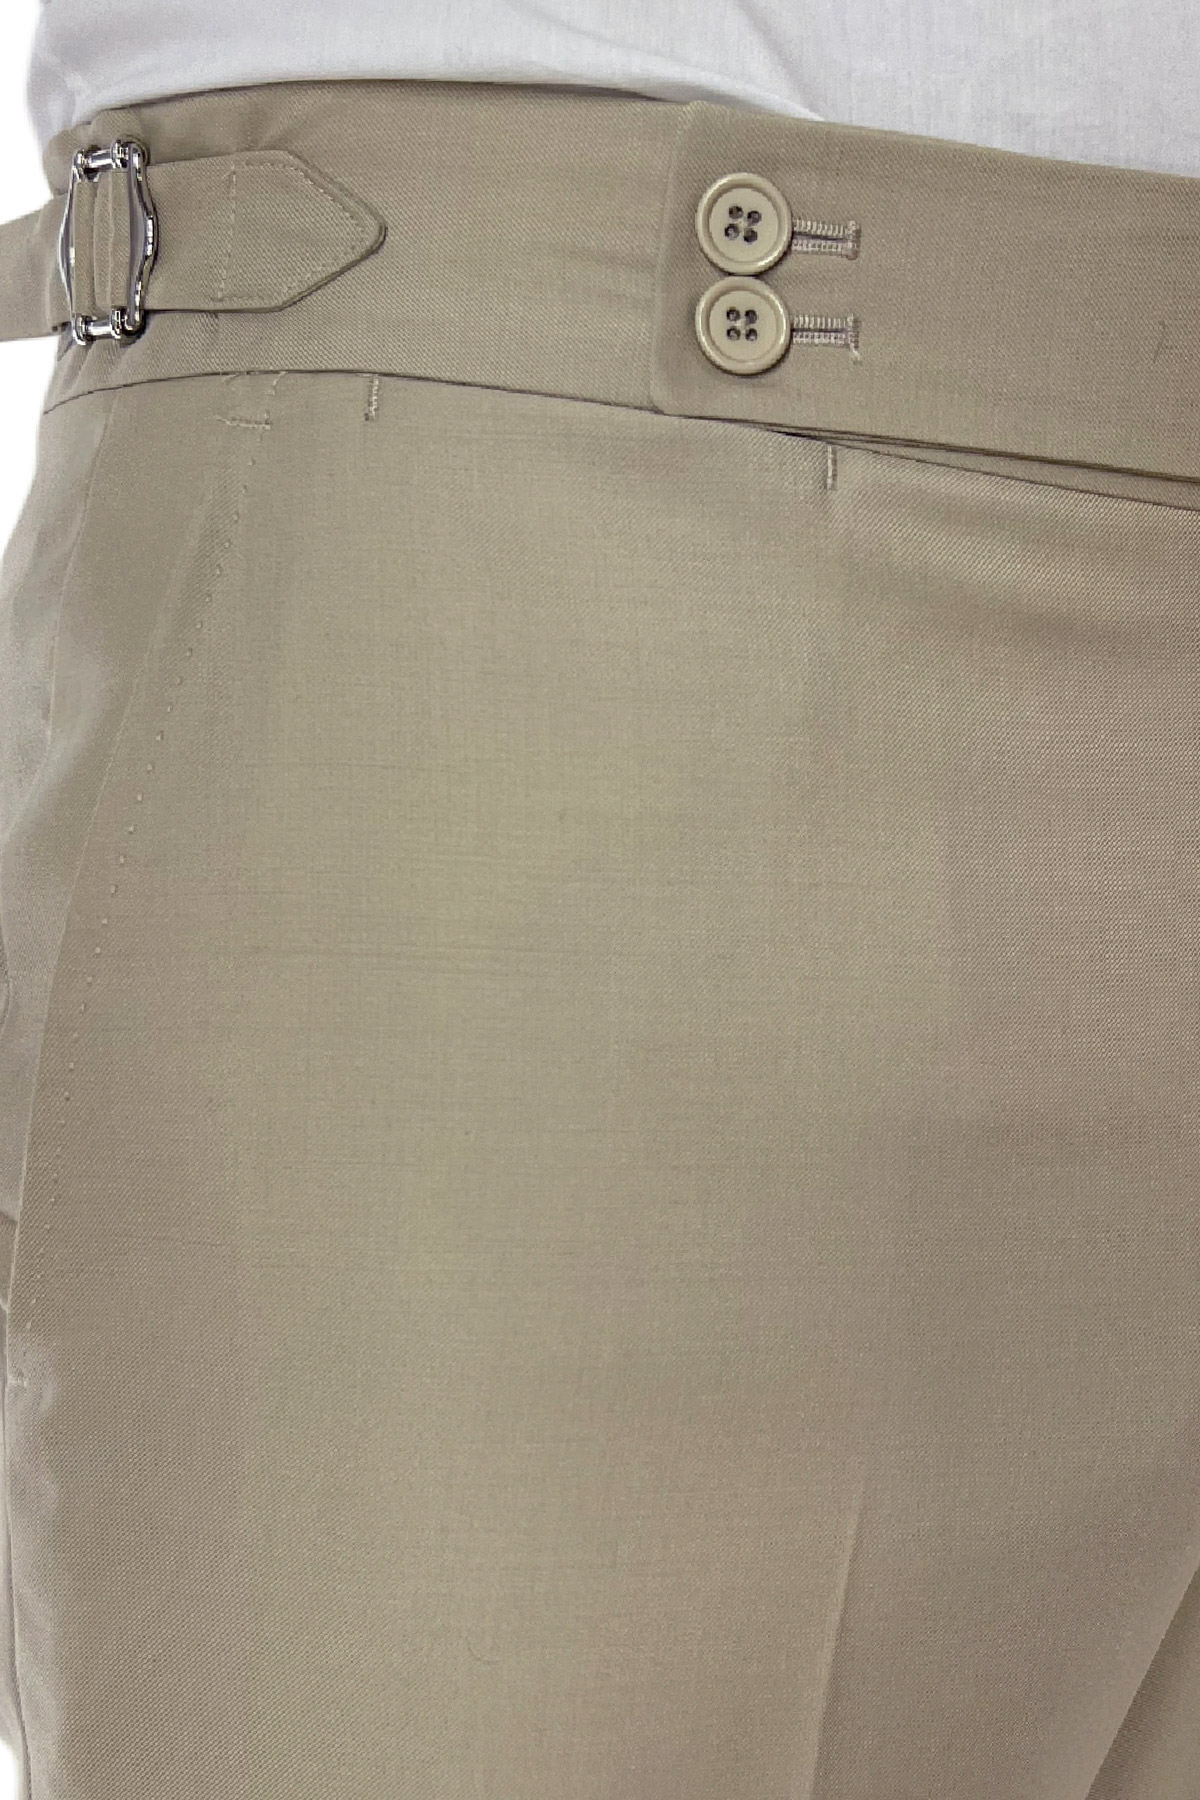 Pantalone uomo Beige vita alta tasca america in fresco lana 100% Vitale Barberis Canonico fibbie laterali e risvolto 4cm